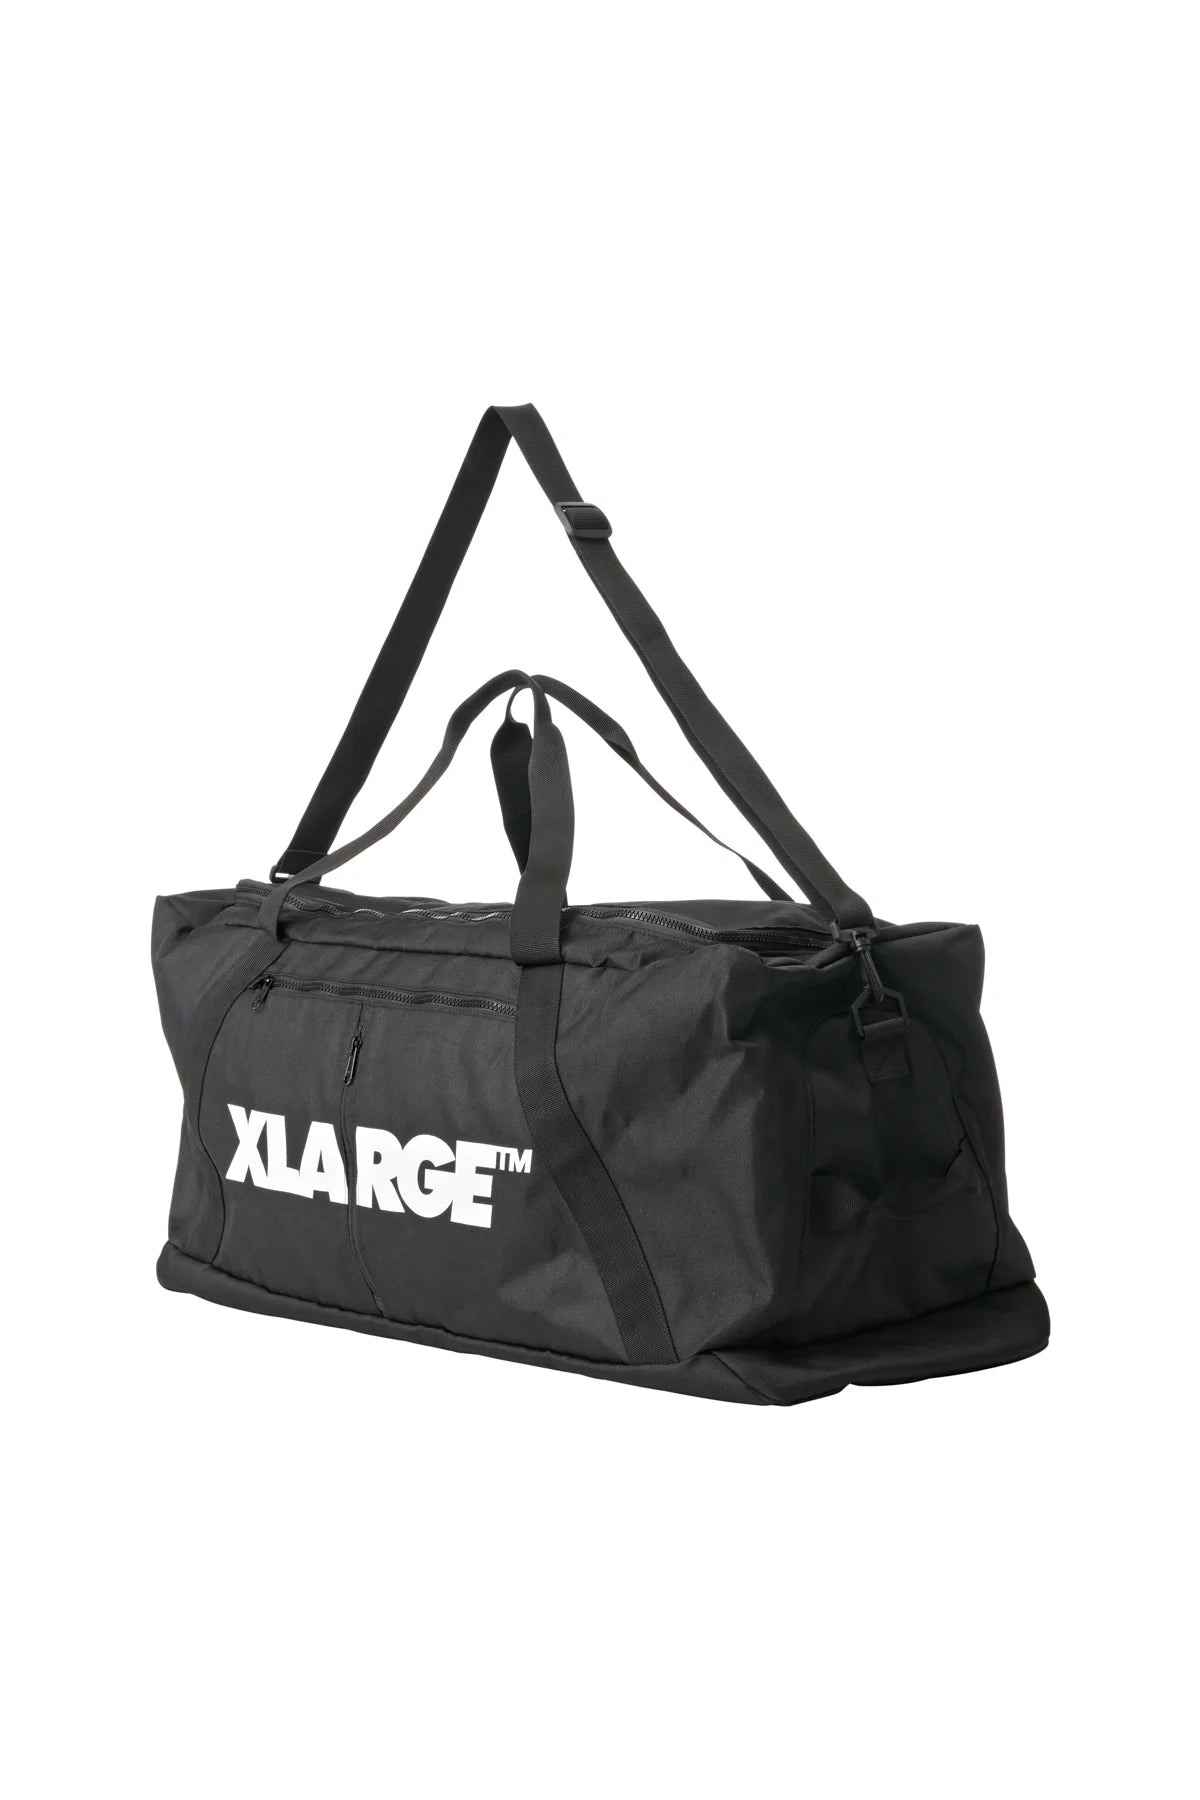 XLARGE XL Duffle - Black